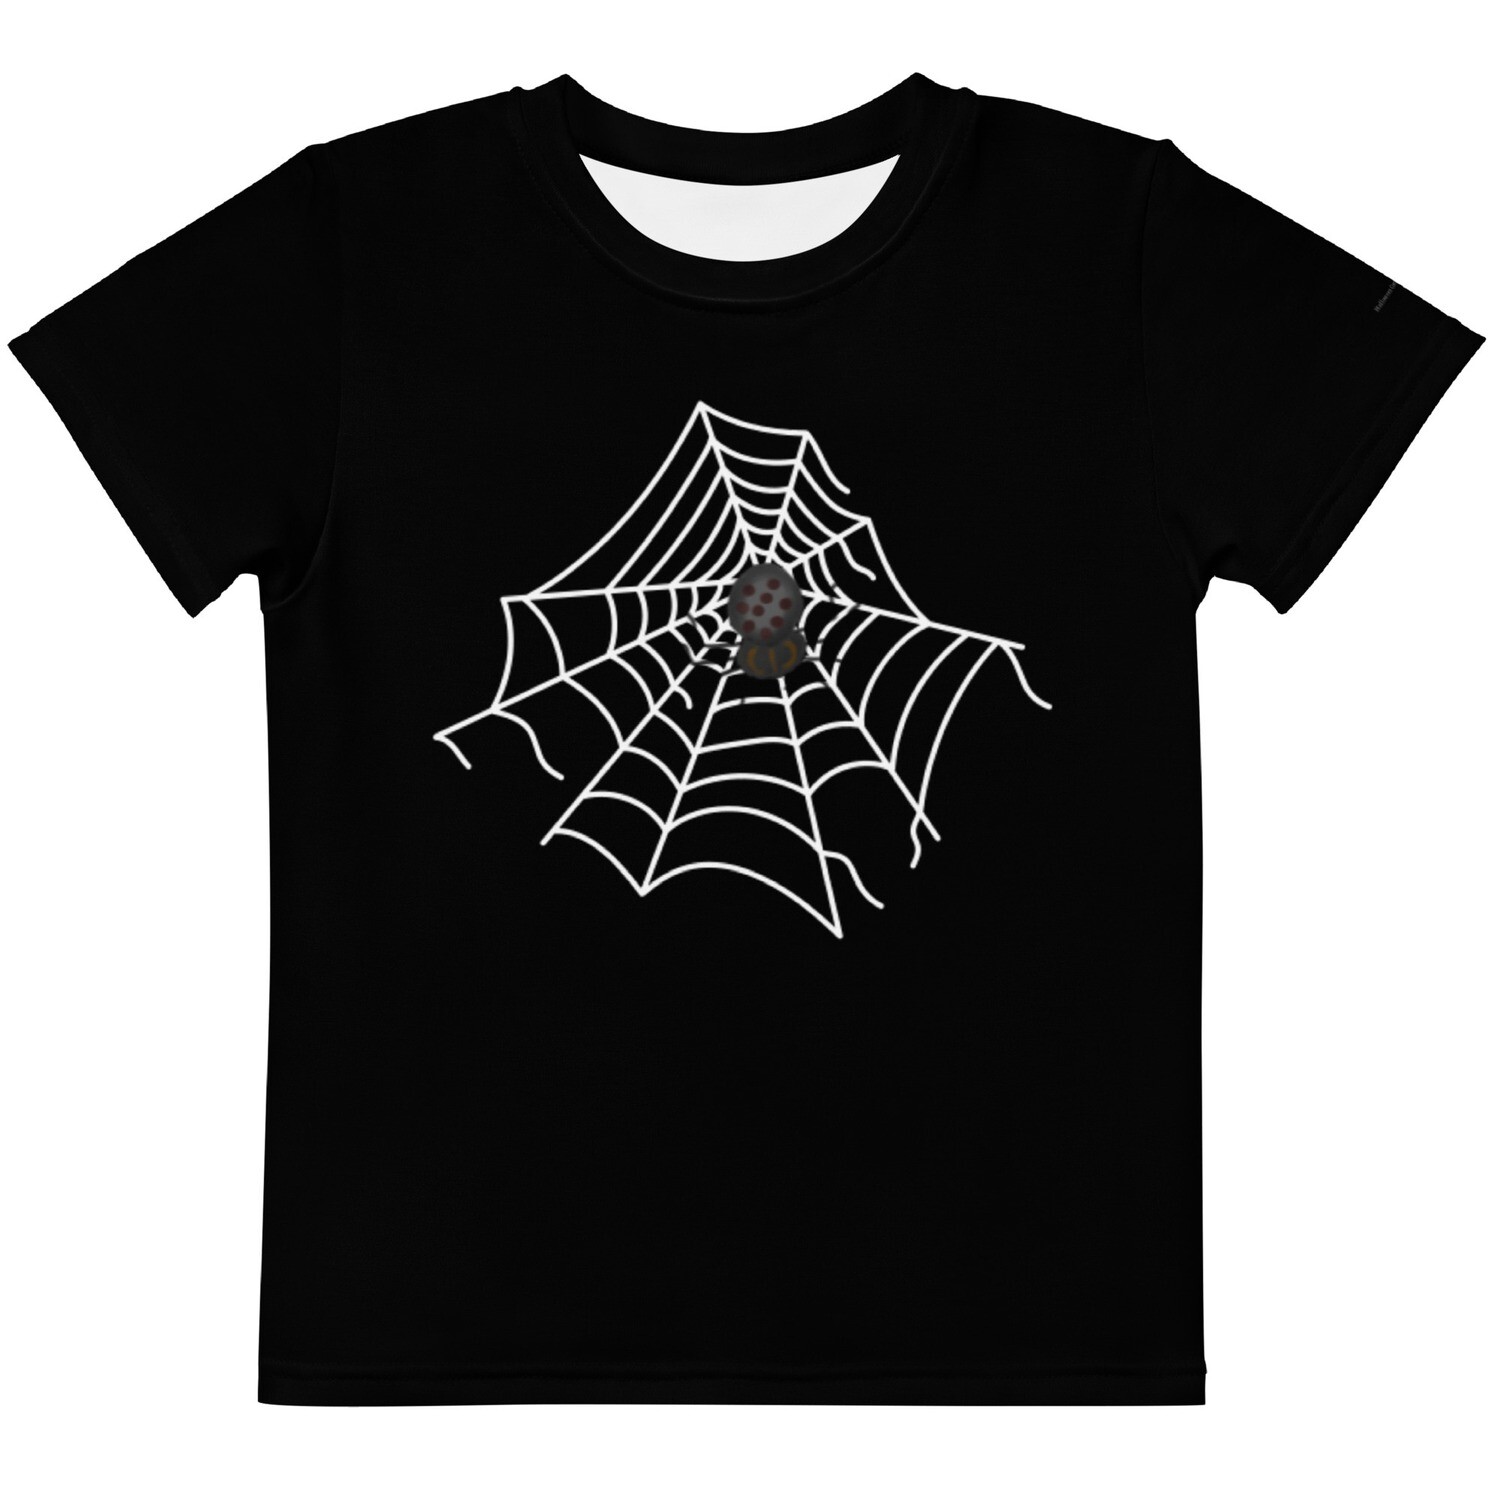 Spider's Web Kids crew neck t-shirt